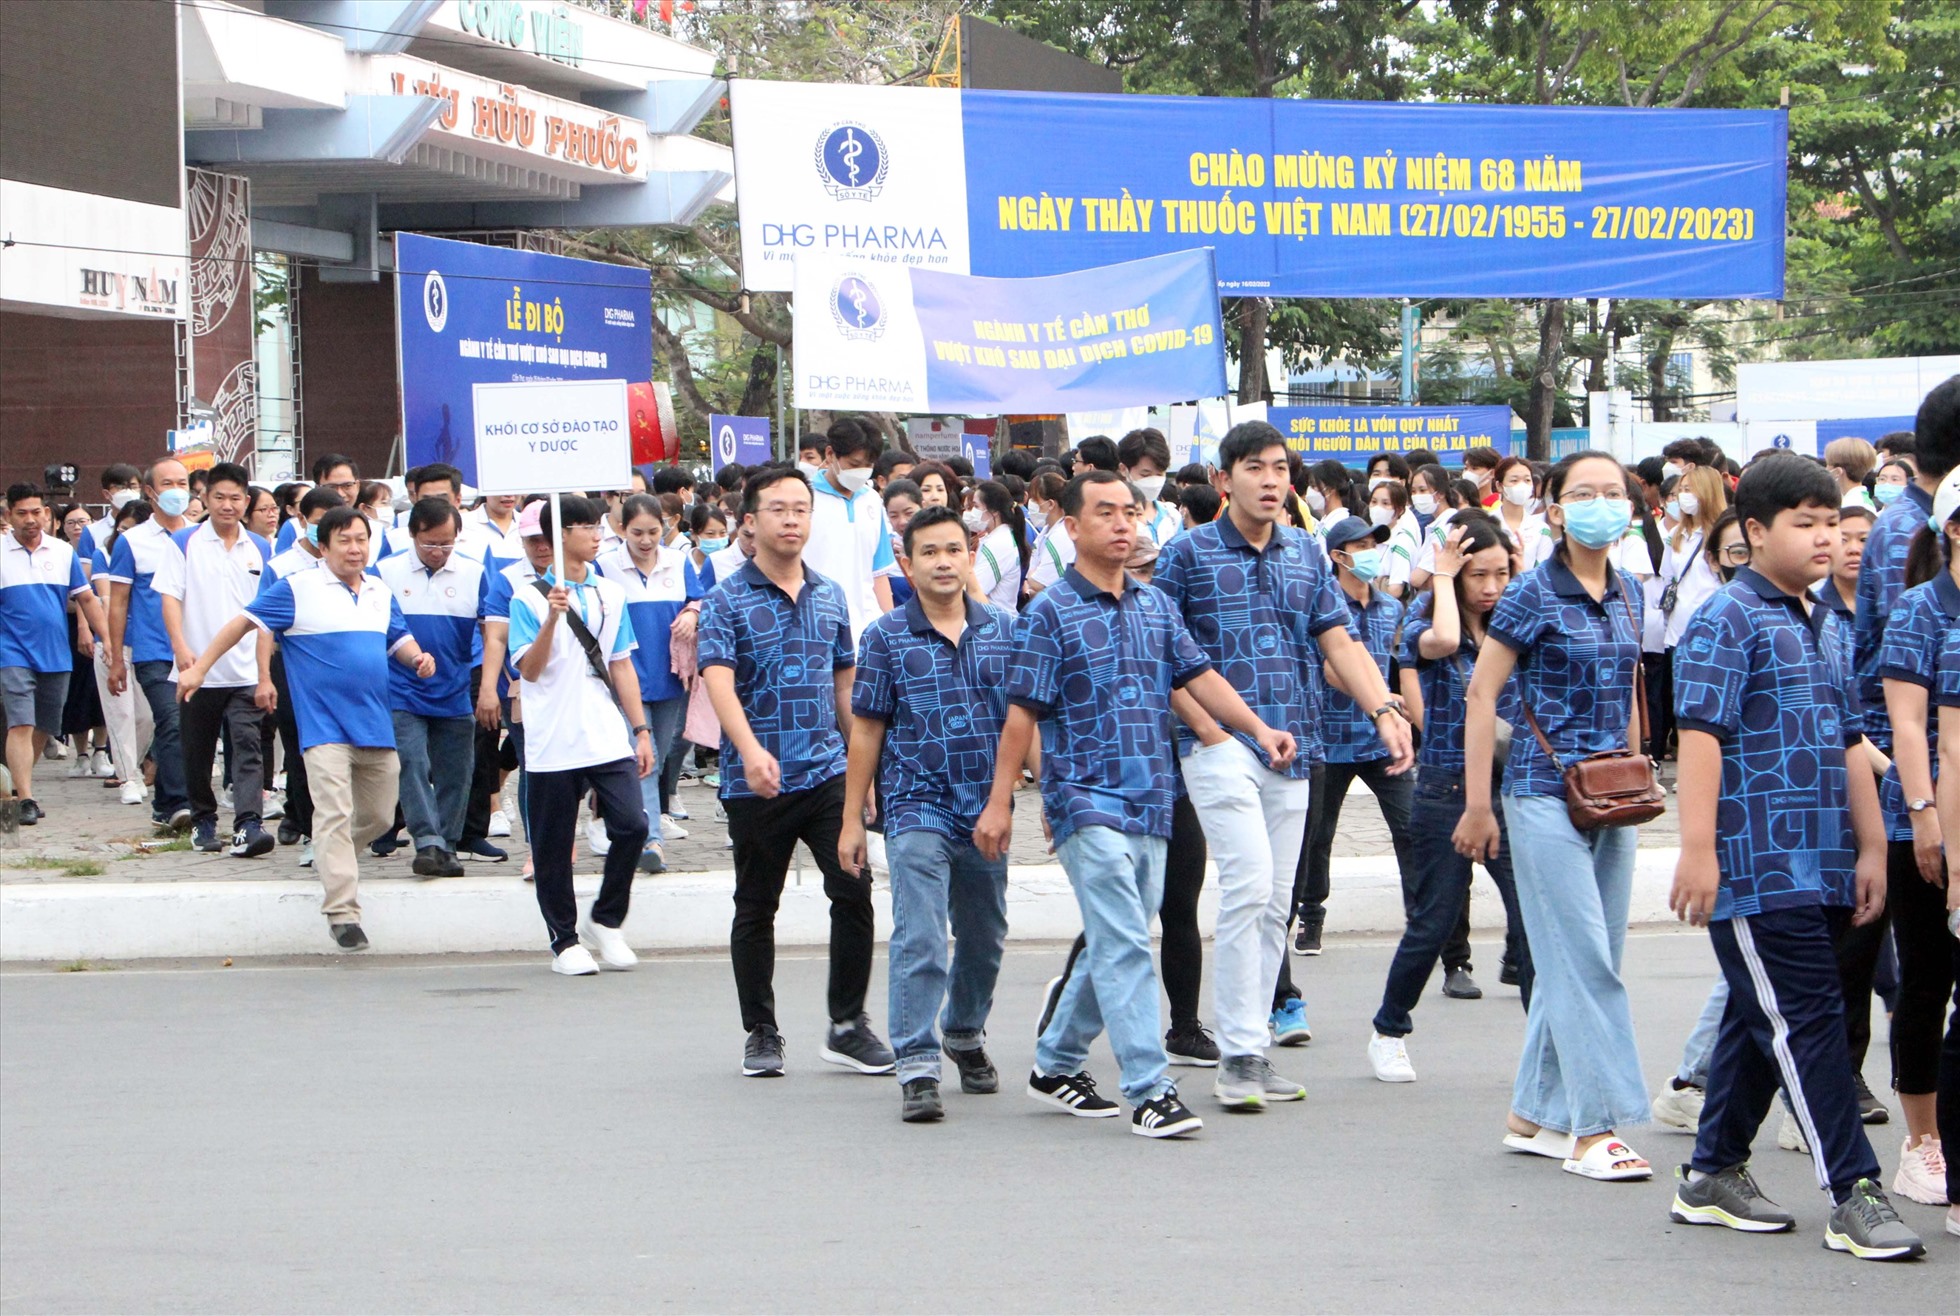 Lễ đi bộ quy tụ hơn 2000 người diễn ra trong không khí tươi vui, hào hứng. Ảnh: Phong Linh